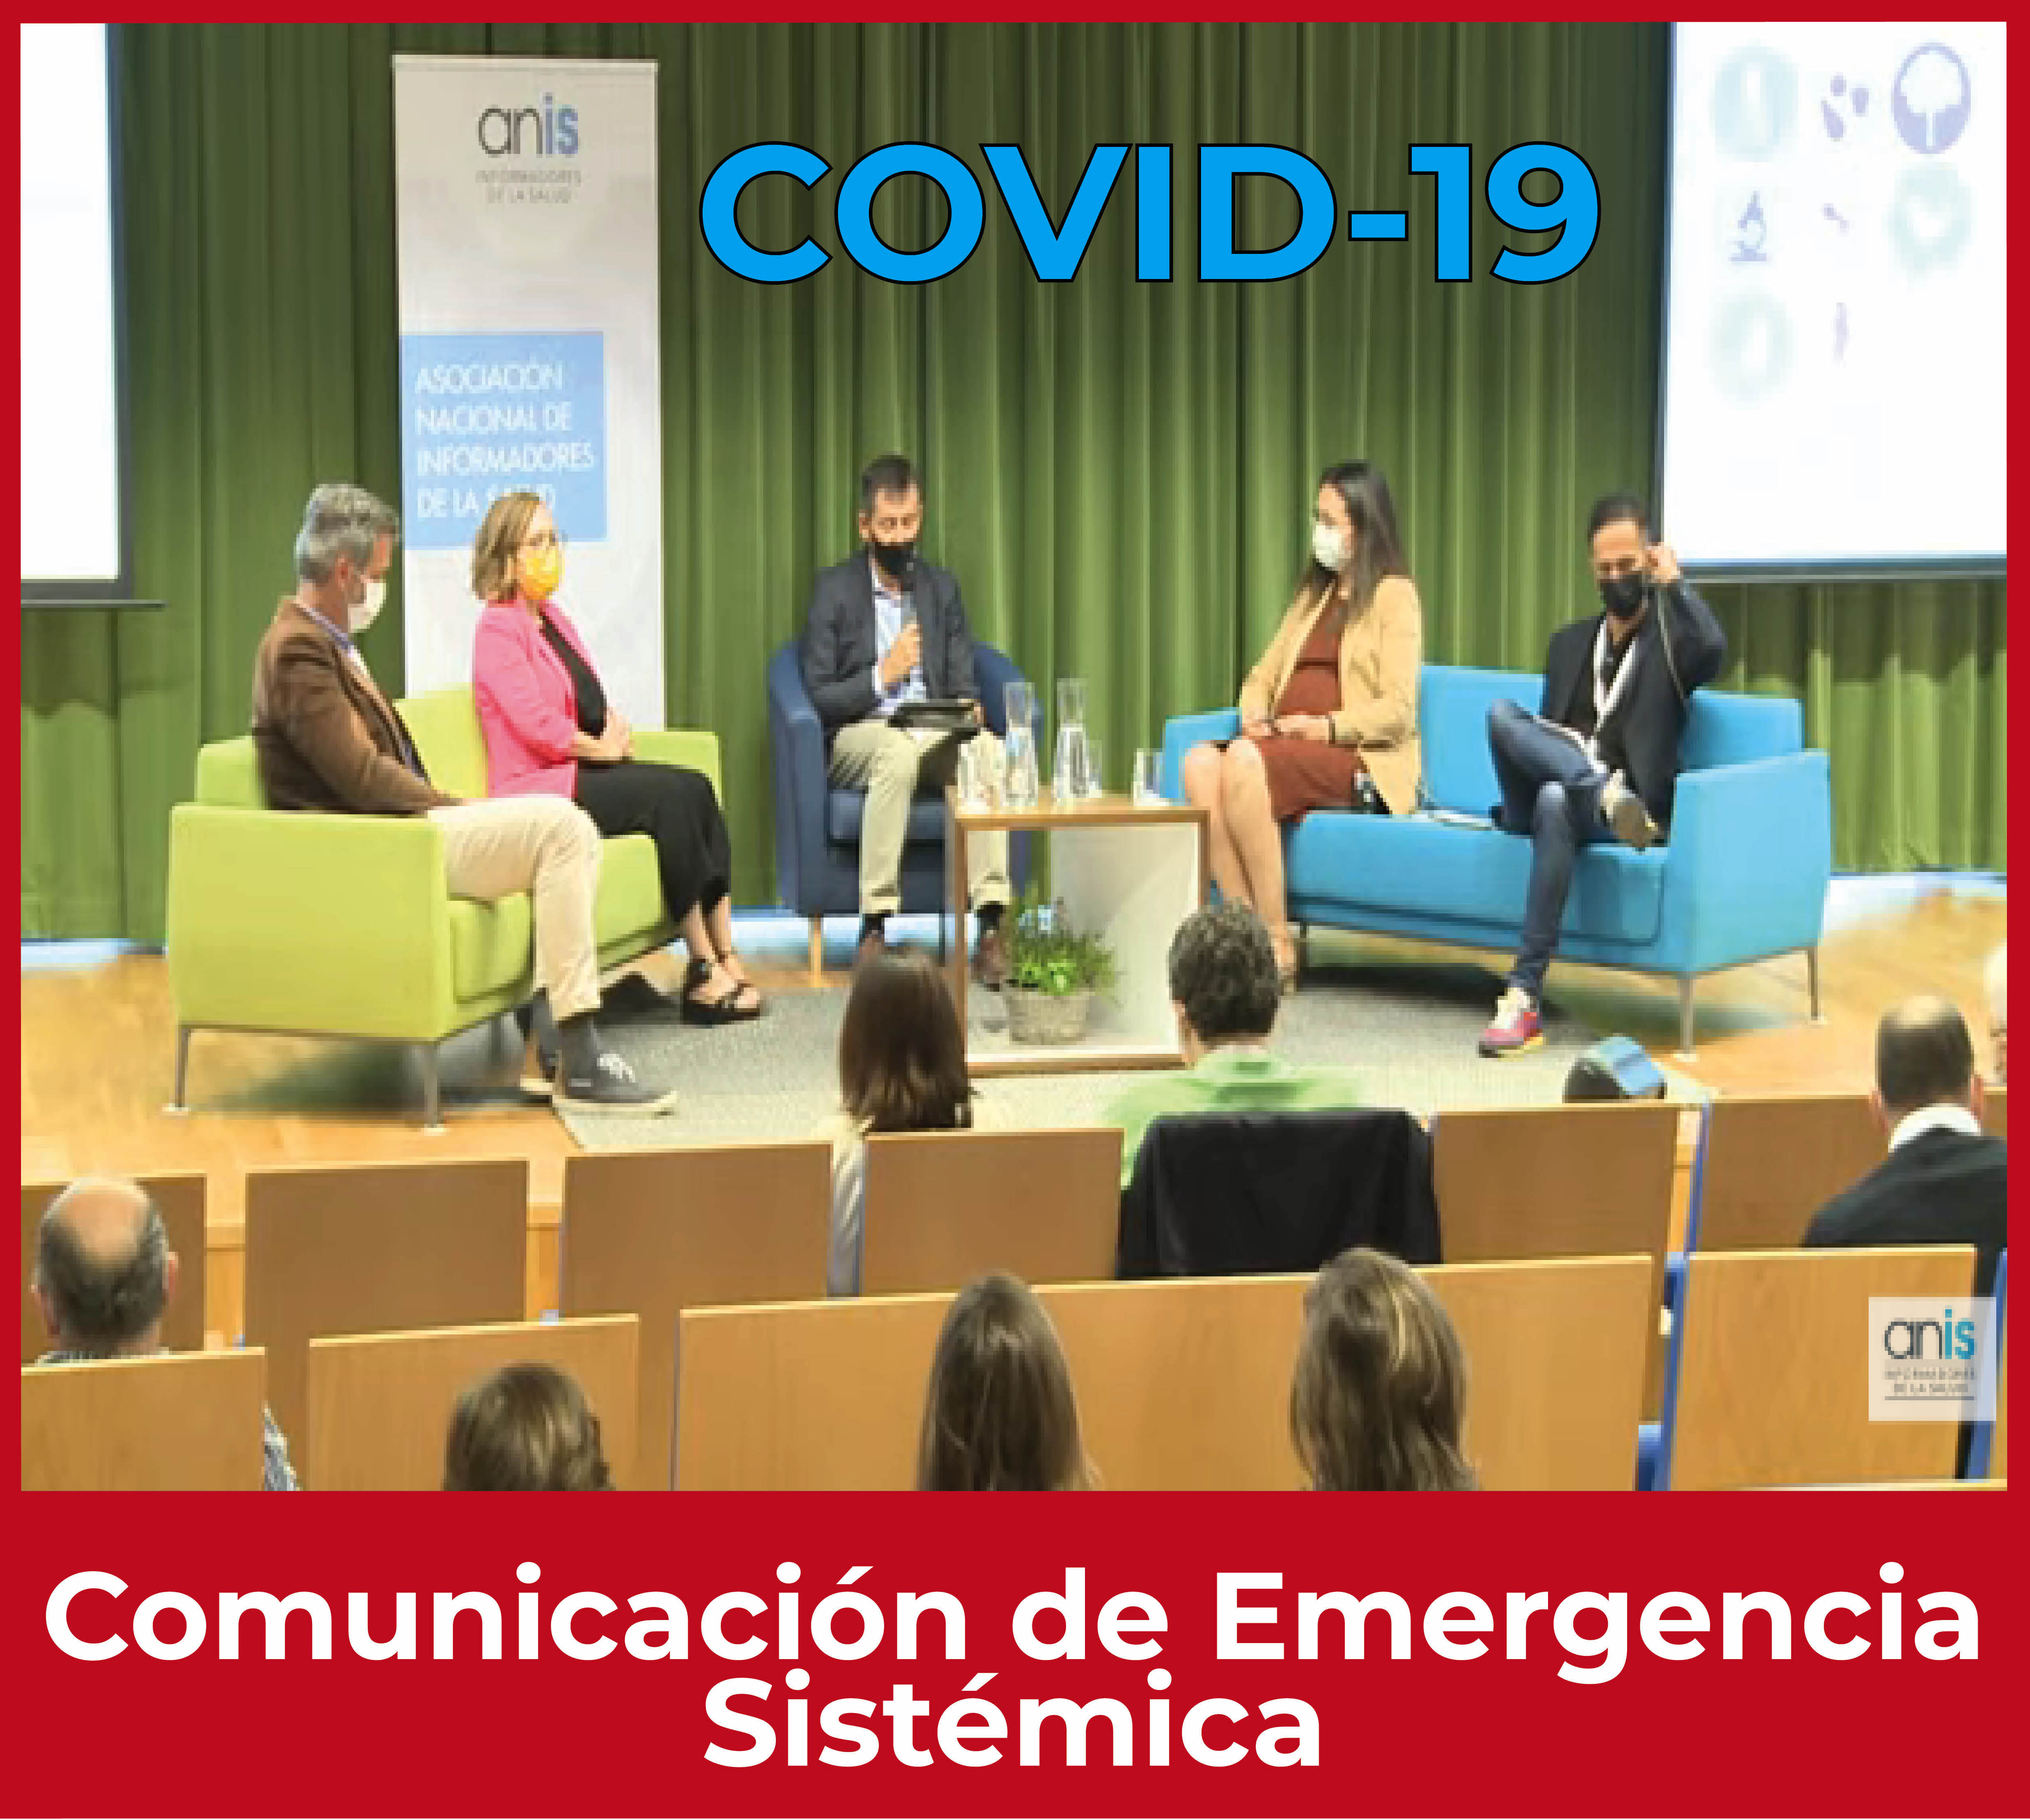 Expertos de la mesa “La comunicación de crisis del COVID-19. Lecciones aprendidas” del congreso ANIS